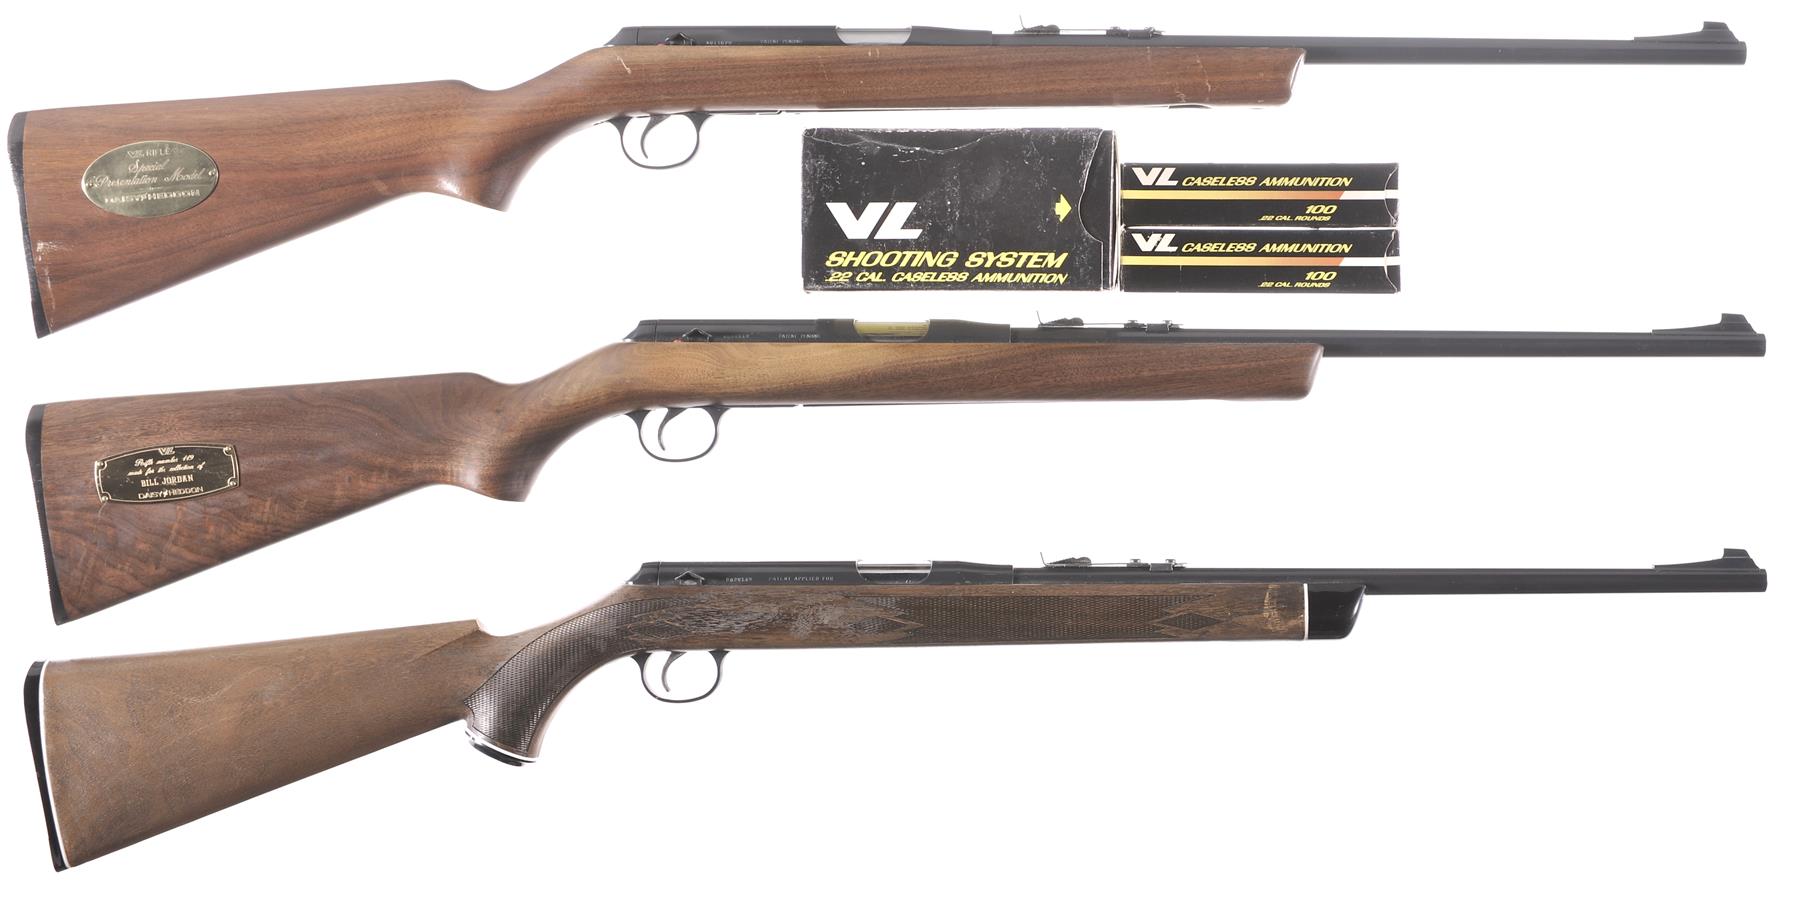 Three Daisy 22 Caseless VL Single Shot Rifles